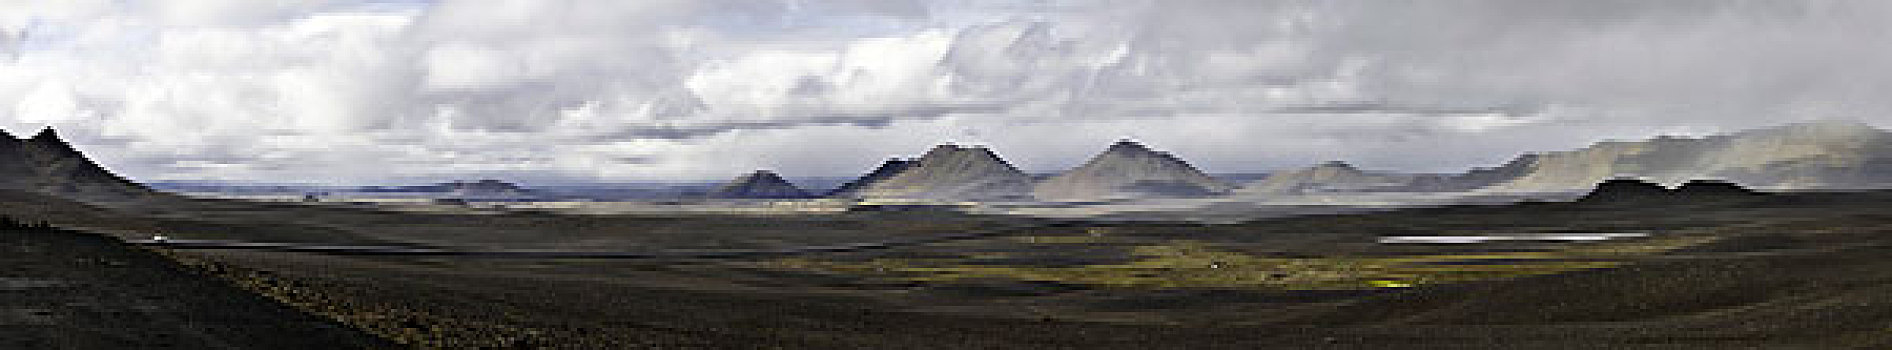 全景,荒芜,风景,冰岛